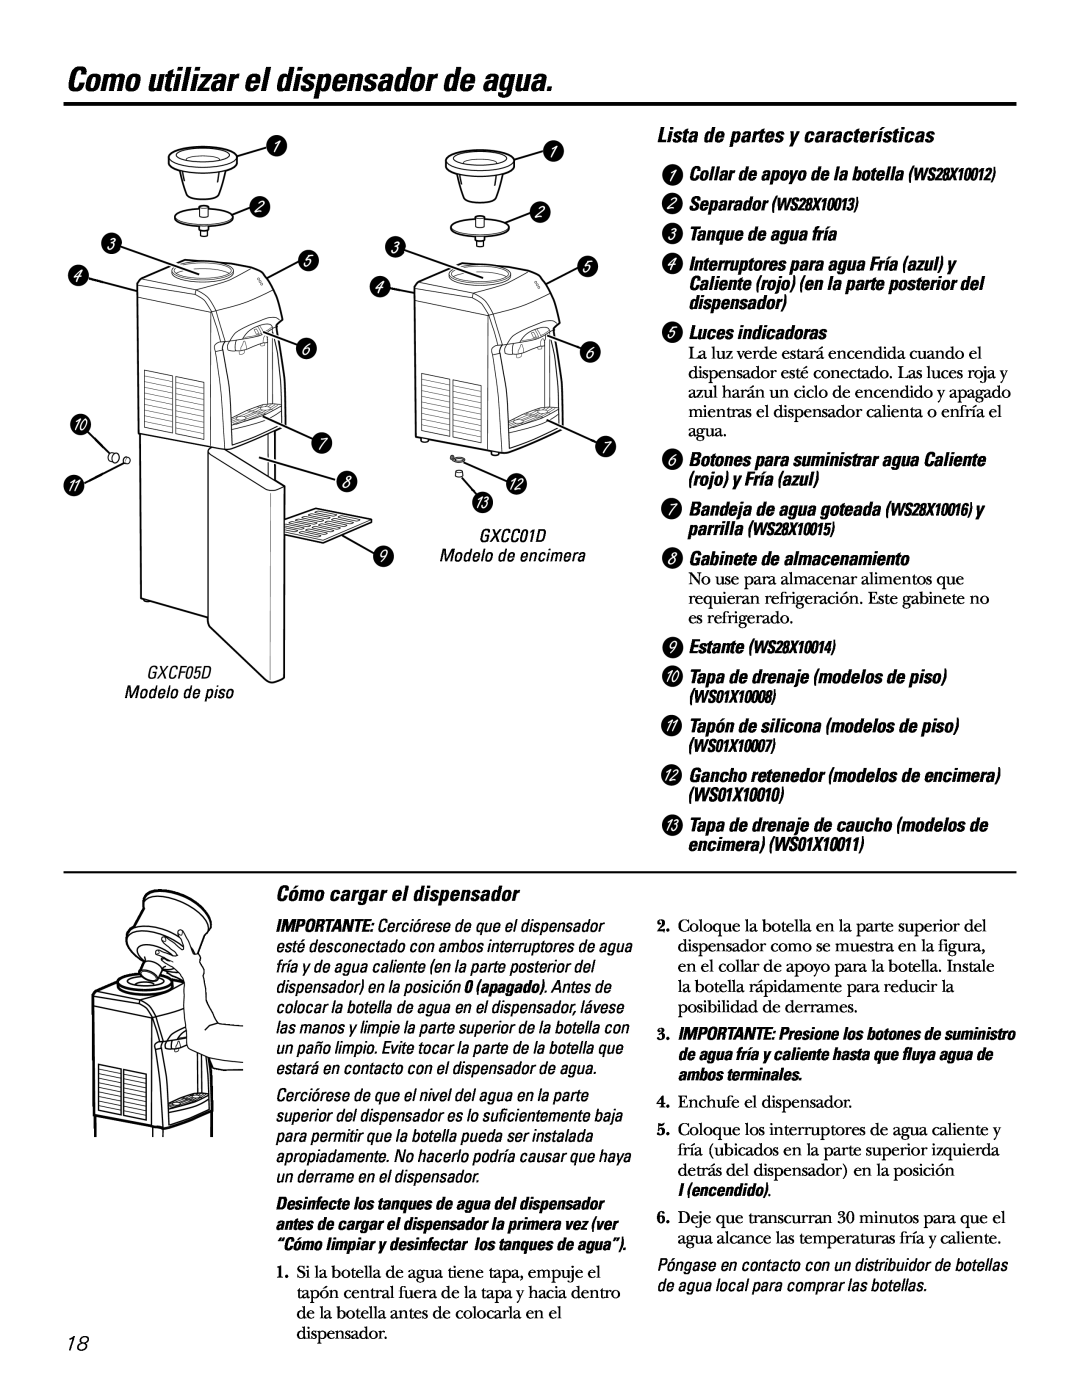 GE GXCF05D Como utilizar el dispensador de agua, Lista de partes y características, Cómo cargar el dispensador 